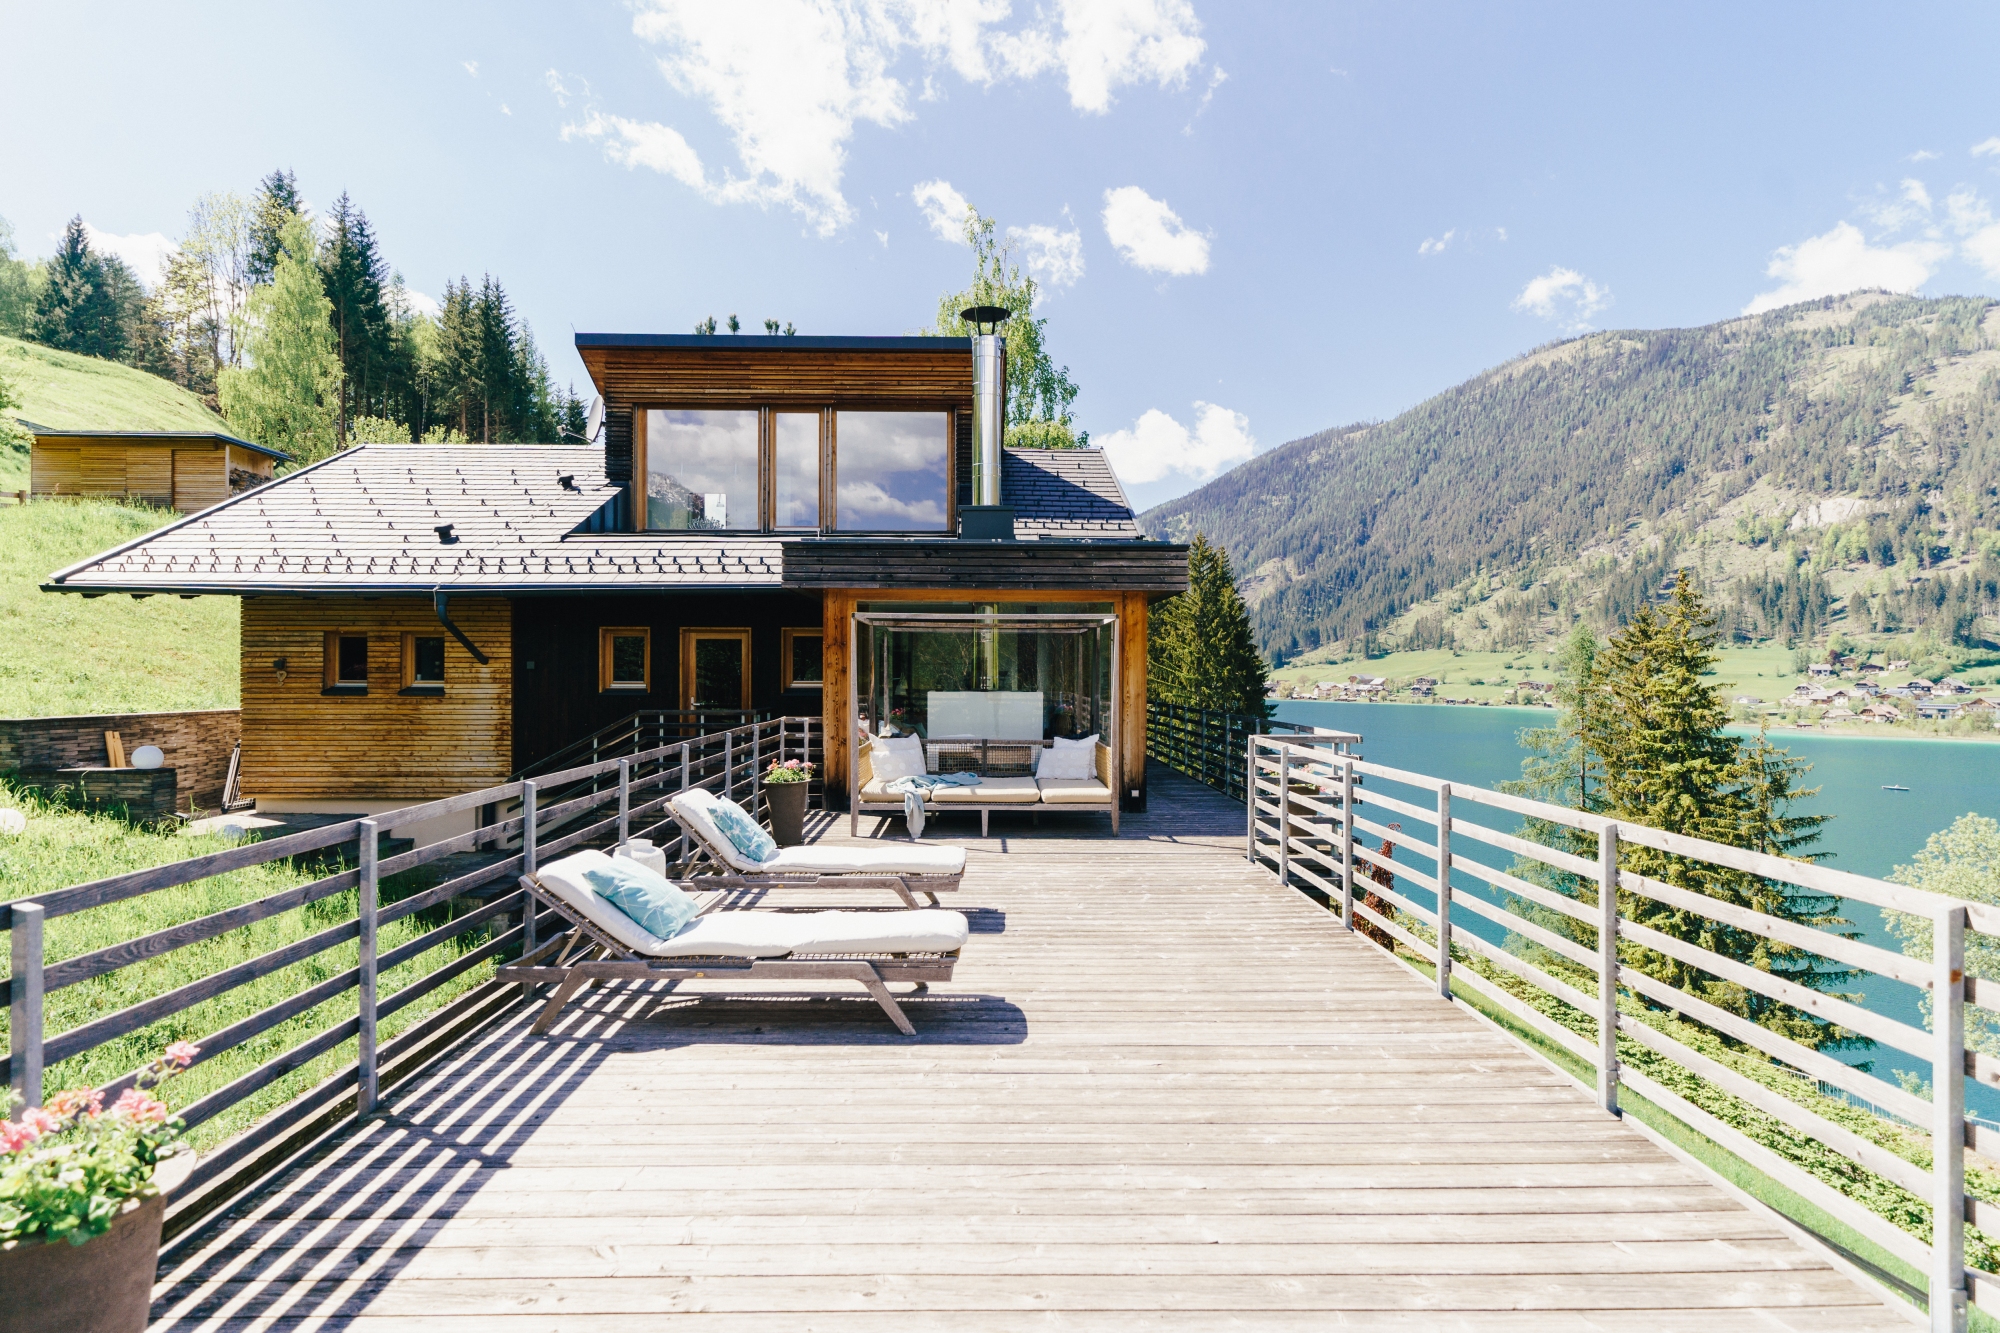 Ferienhaus am Weissensee mit eigenem Seezugang by Seebnb